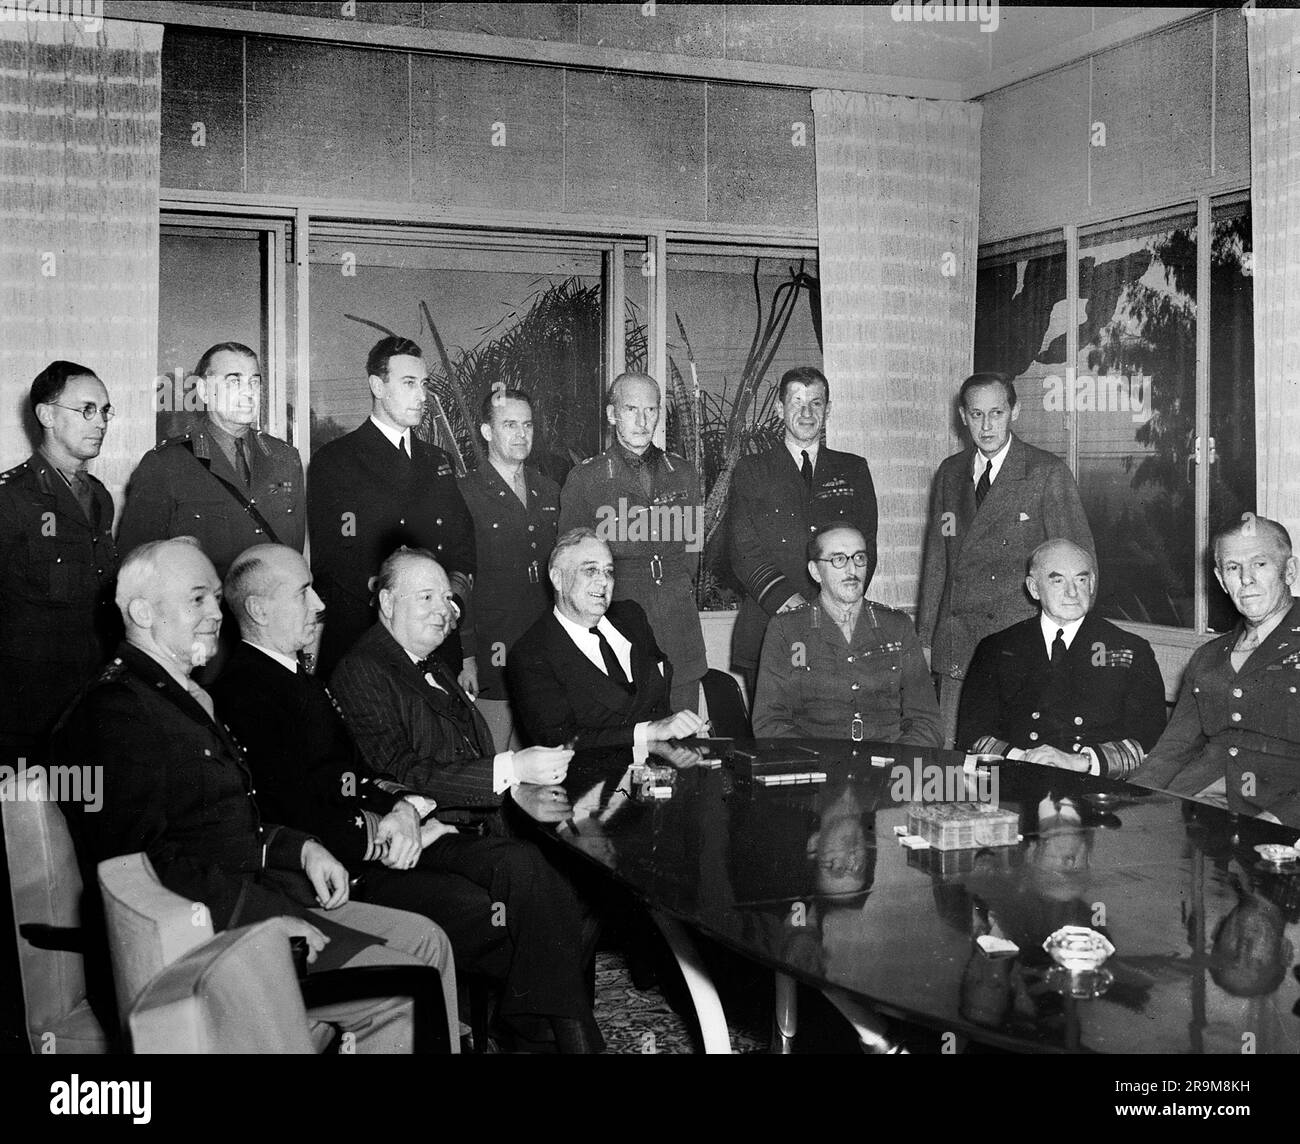 Primo ministro britannico Winston Churchill (terzo posto da sinistra), Stati Uniti Il presidente Franklin D. Roosevelt (4° da sinistra) e il generale Sir Alan Brooke (5° da sinistra) con altri leader militari in conferenza durante la seconda guerra mondiale, Casablanca, Marocco, Stati Uniti Army Signal Corps, gennaio 1943 Foto Stock